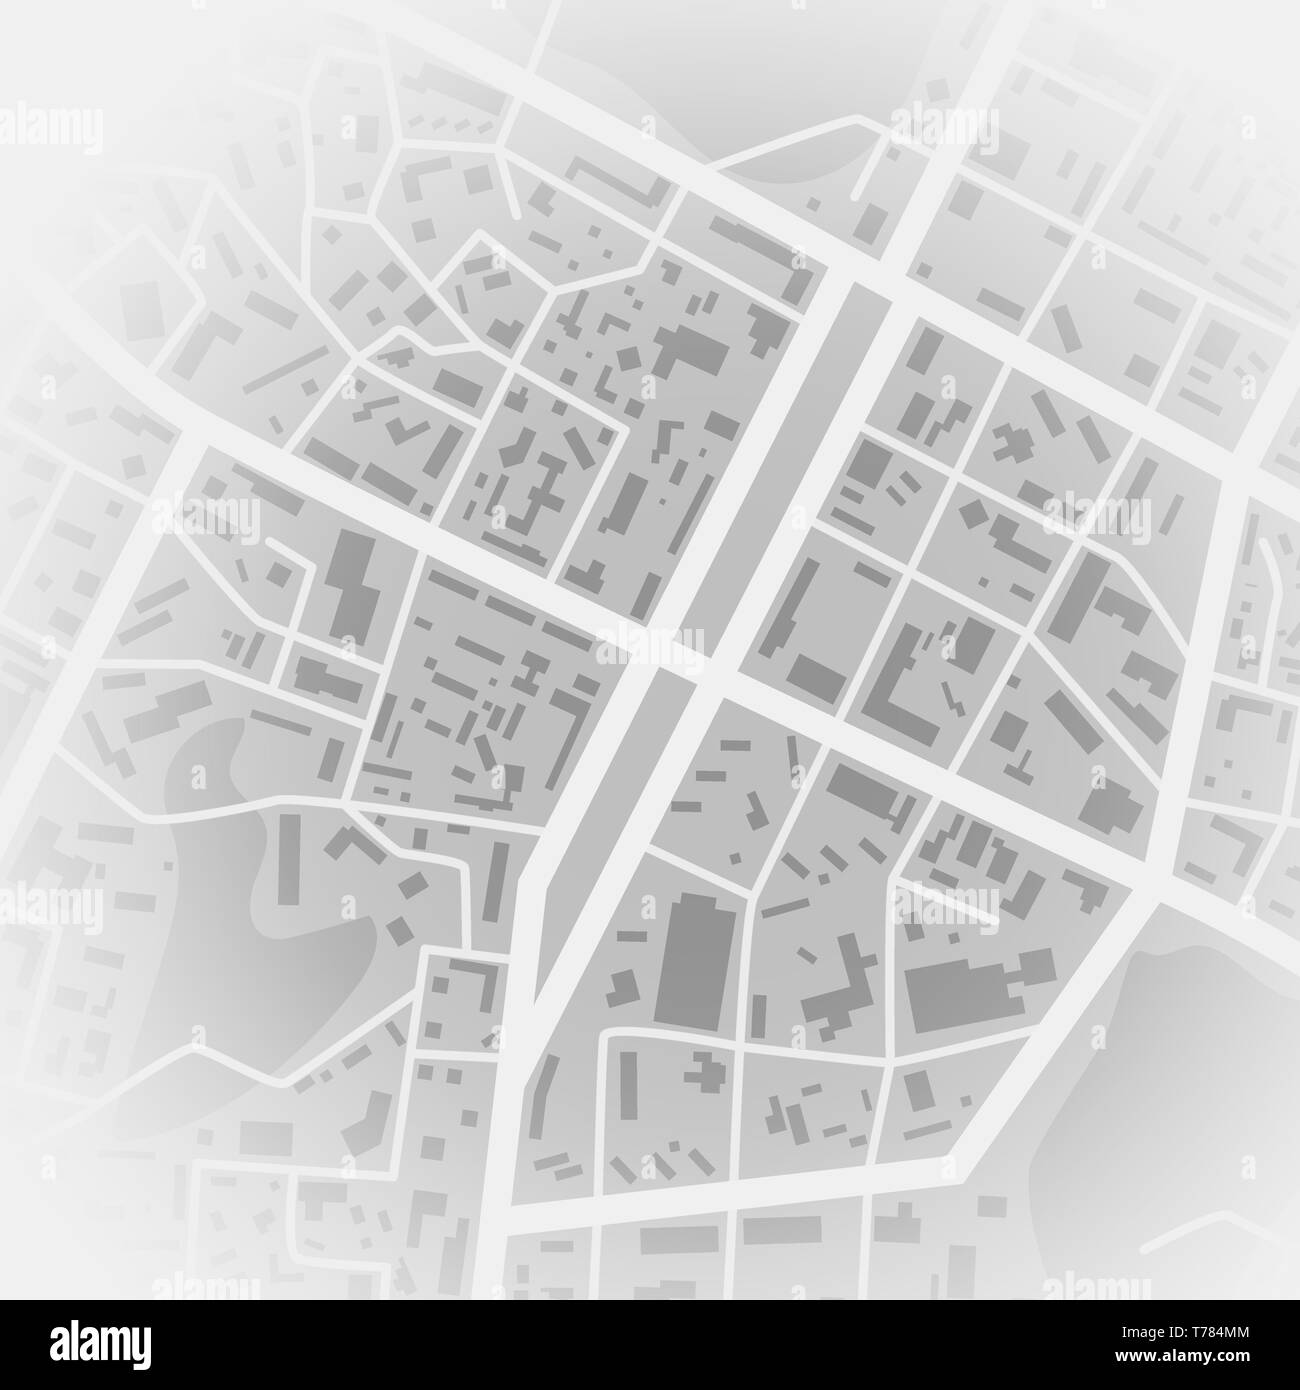 Abstrakte Stadtplan. Drucken mit Stadt Topographie. Stadt Wohnviertel. Vector Illustration Stock Vektor